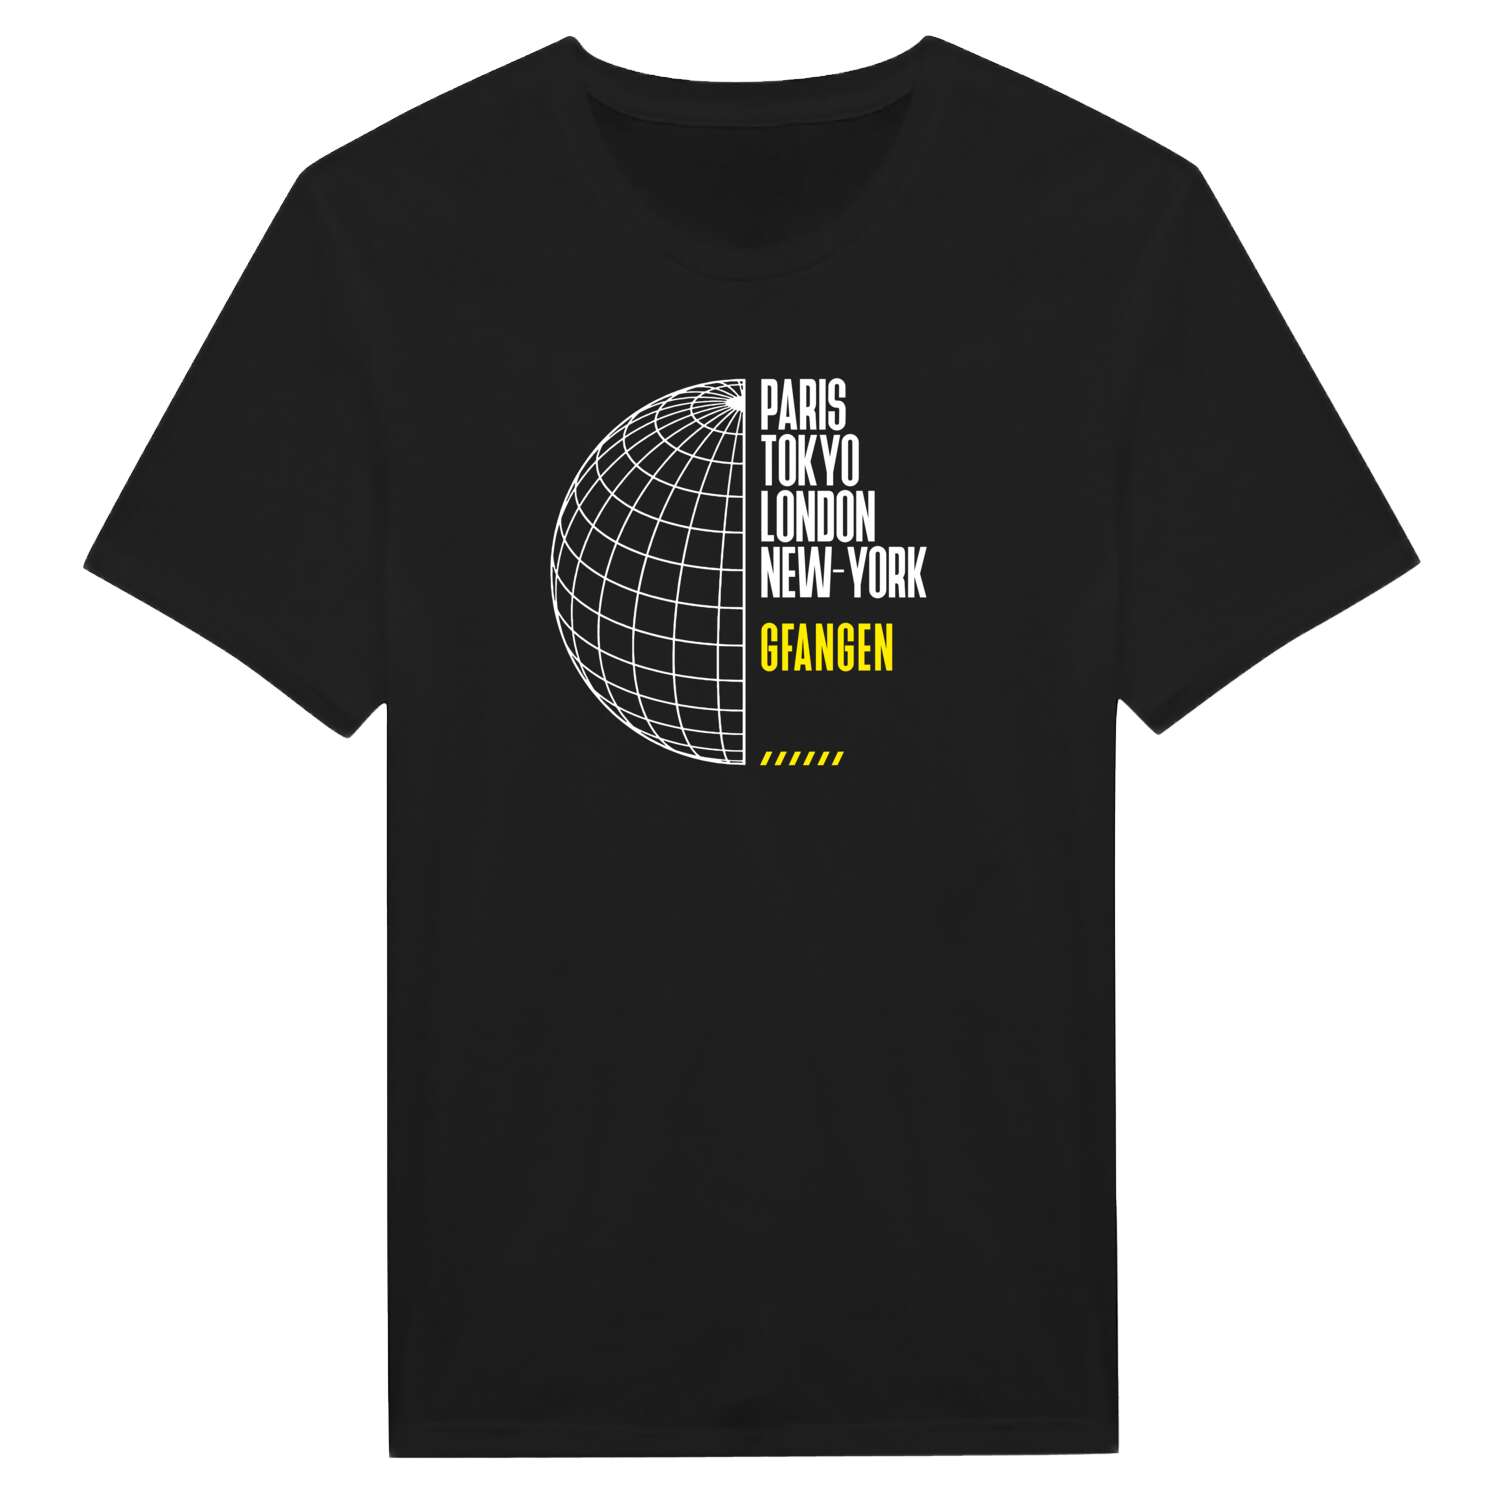 Gfangen T-Shirt »Paris Tokyo London«